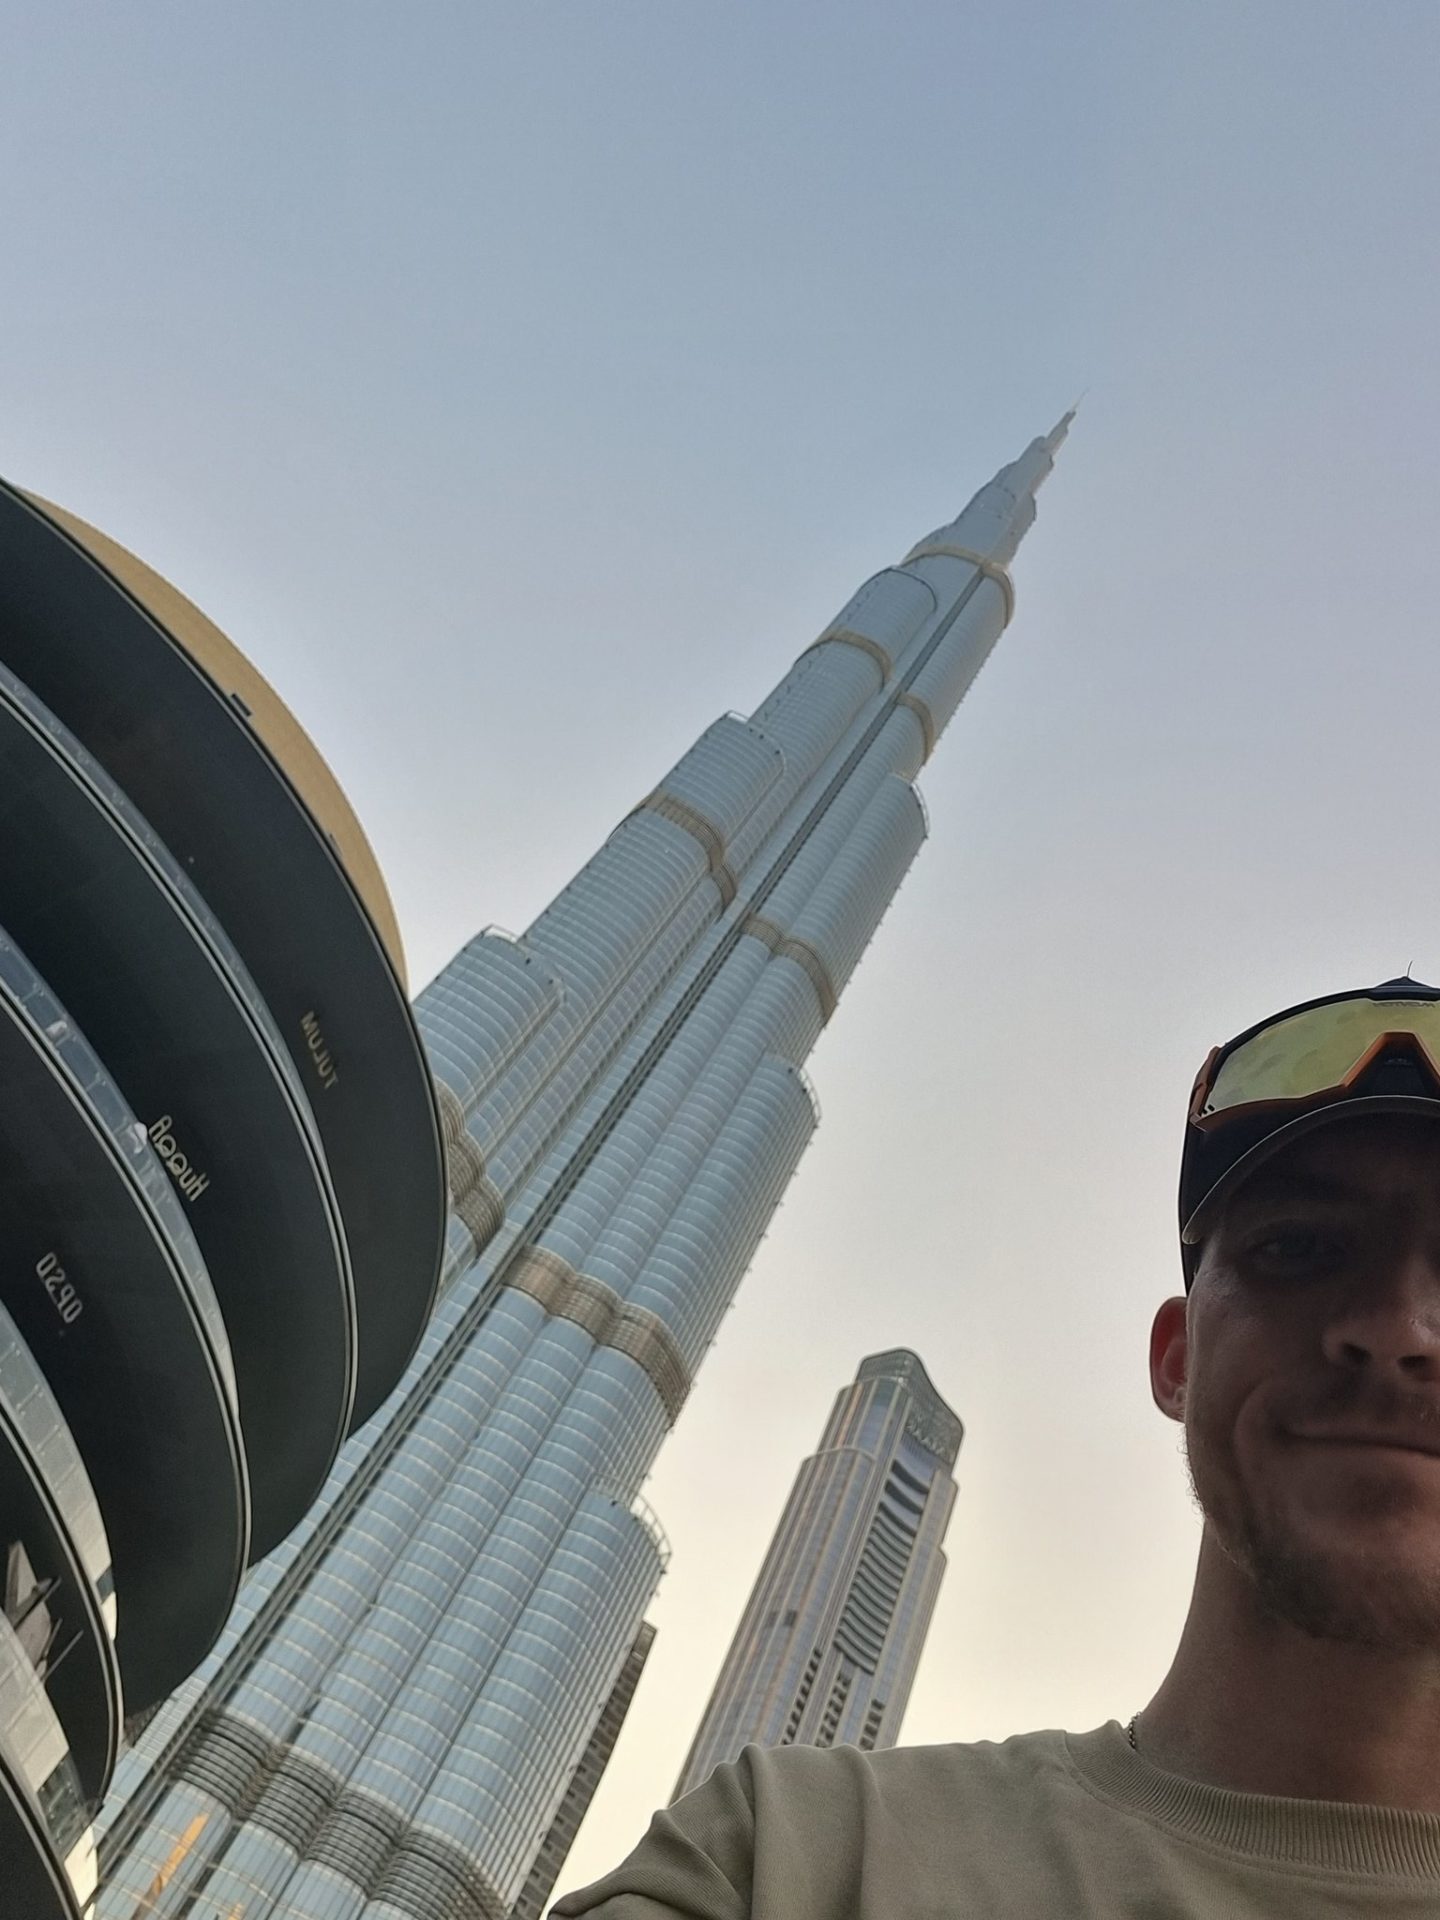 Tomás Mac an t-Saoir beside the Burj Khalifa skyscraper in Dubai